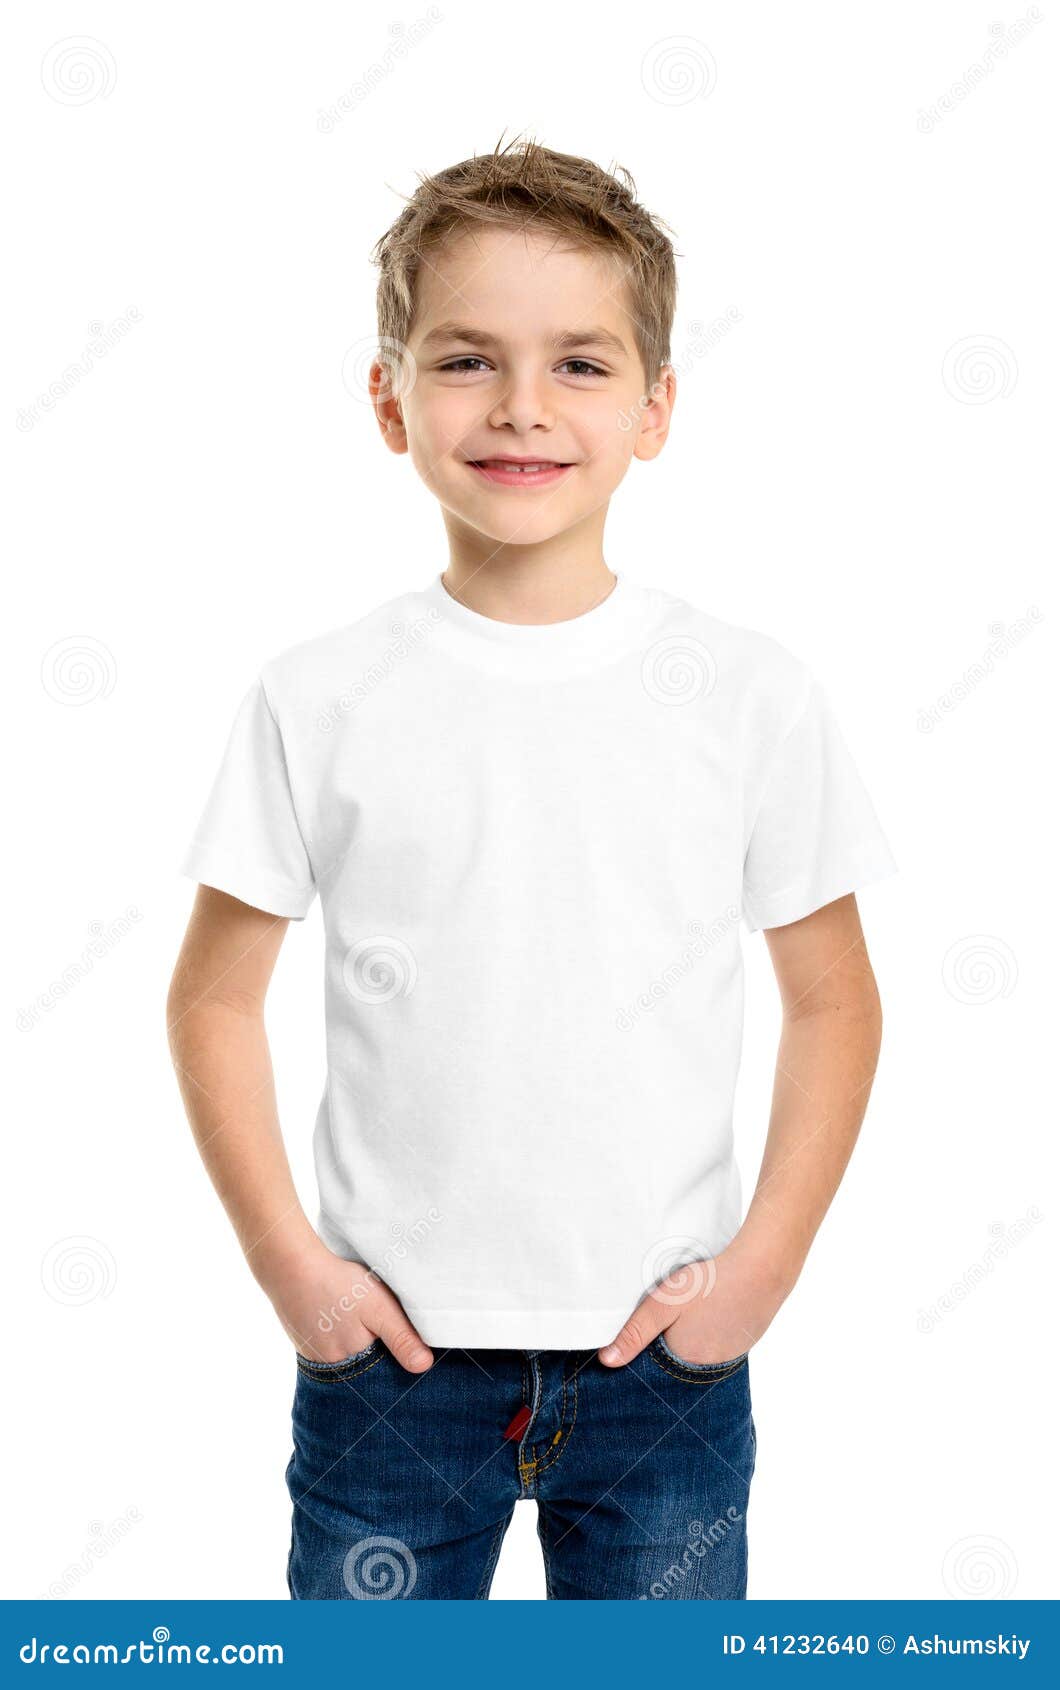 white t-shirt on a cute boy